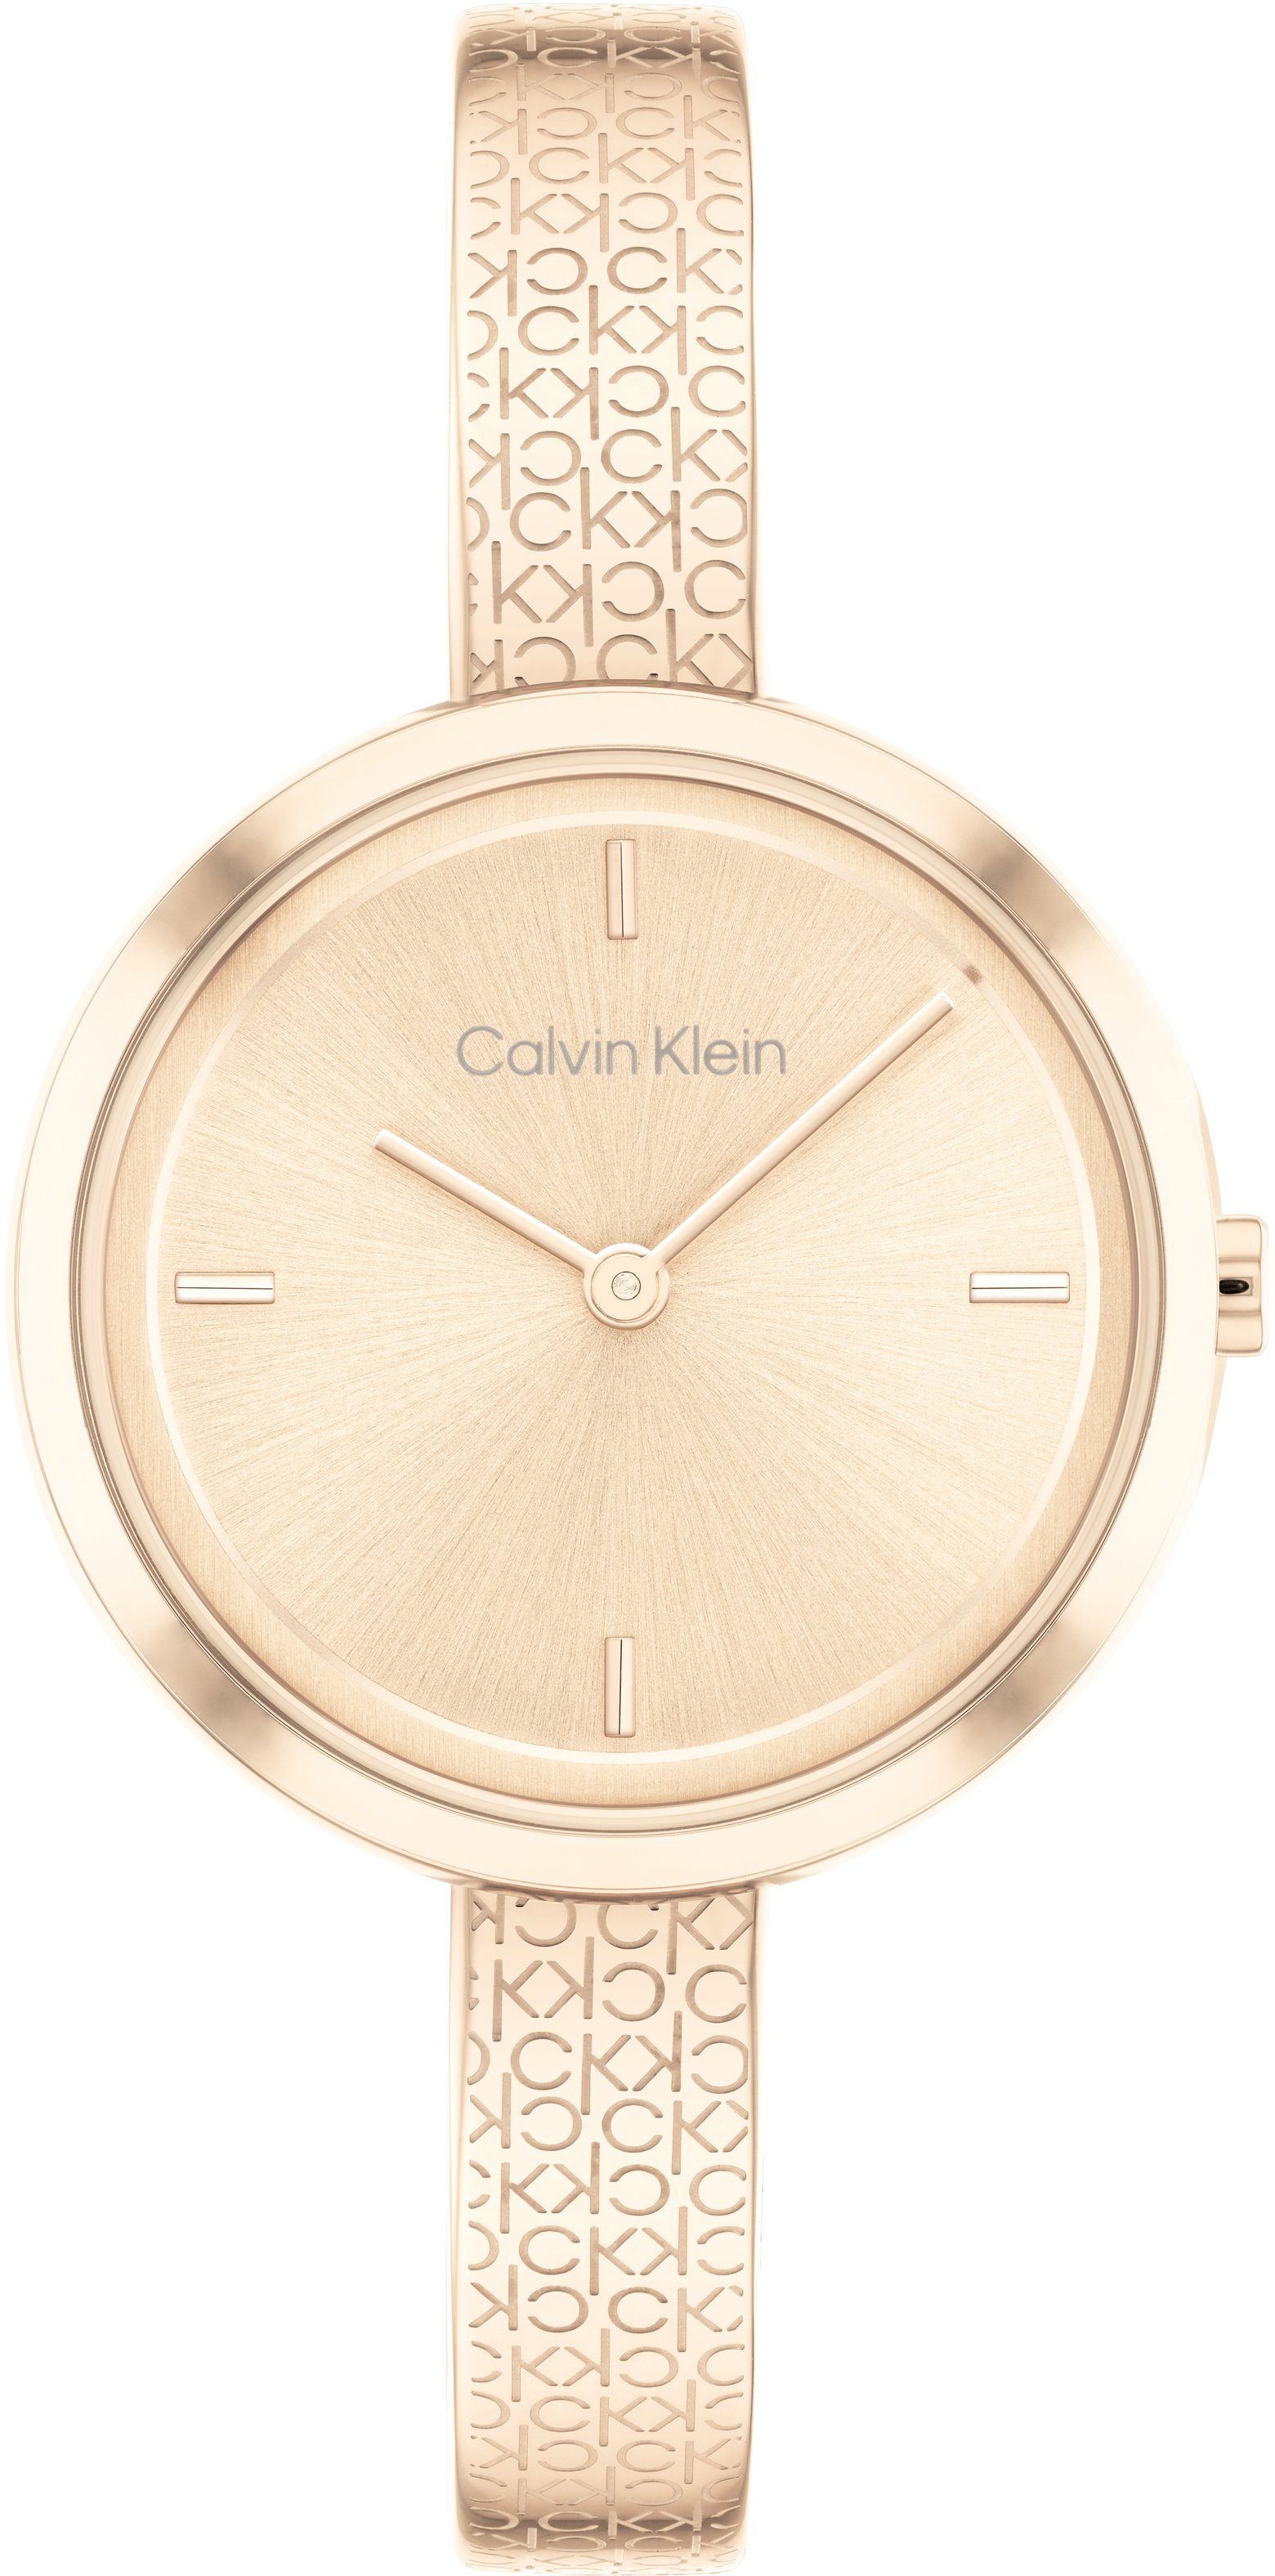 Calvin Klein Quarzuhr ICONIC Bangle, 25200183, Armbanduhr, Damenuhr, Mineralglas, IP-Beschichtung